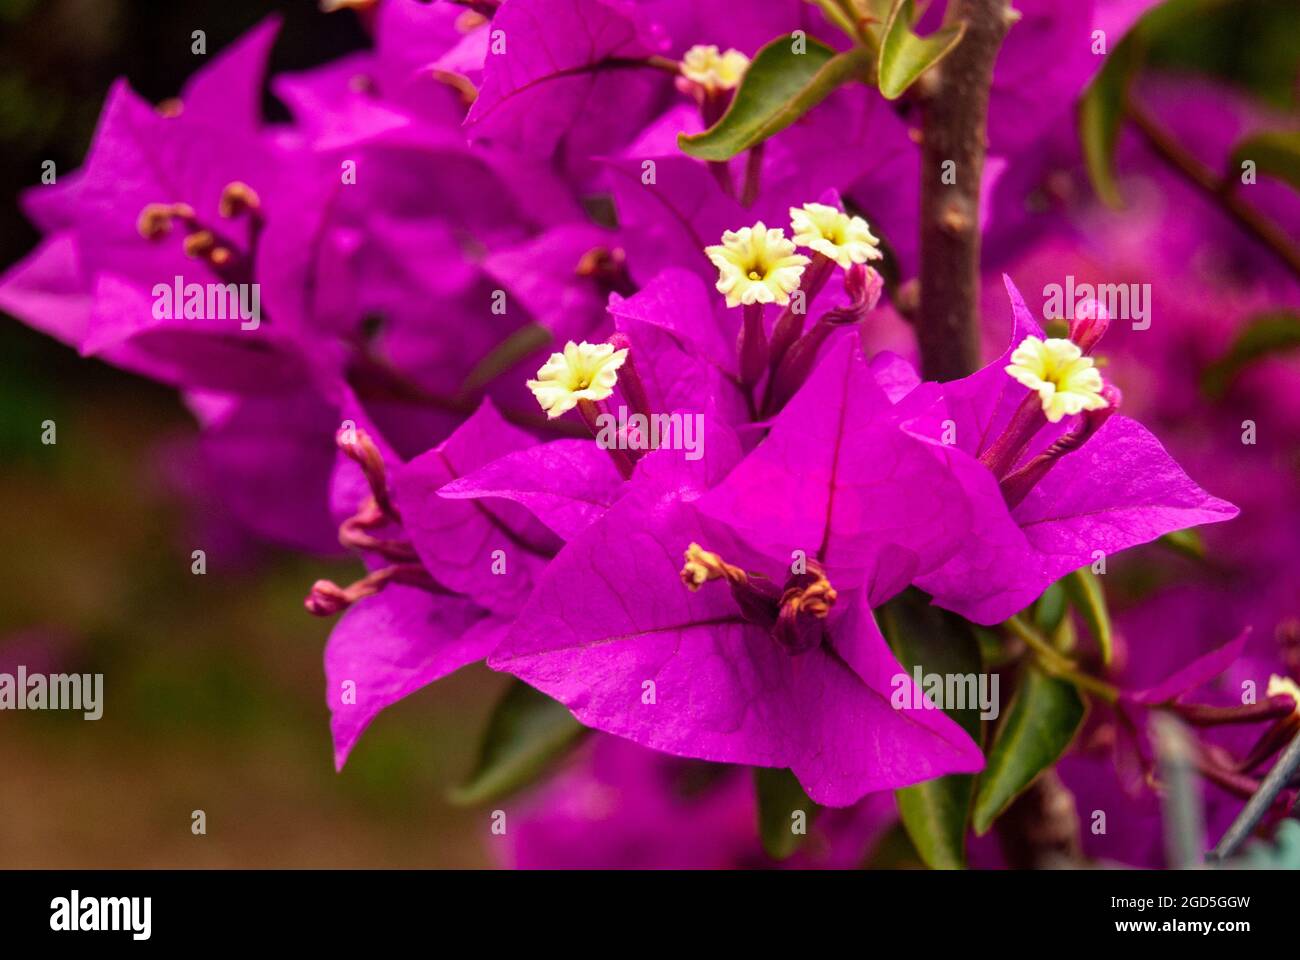 Makroaufnahme von kleinen weißen Blüten, die blühen - Bougainvillea Glabra, Makro, selektiver Fokus. Stockfoto